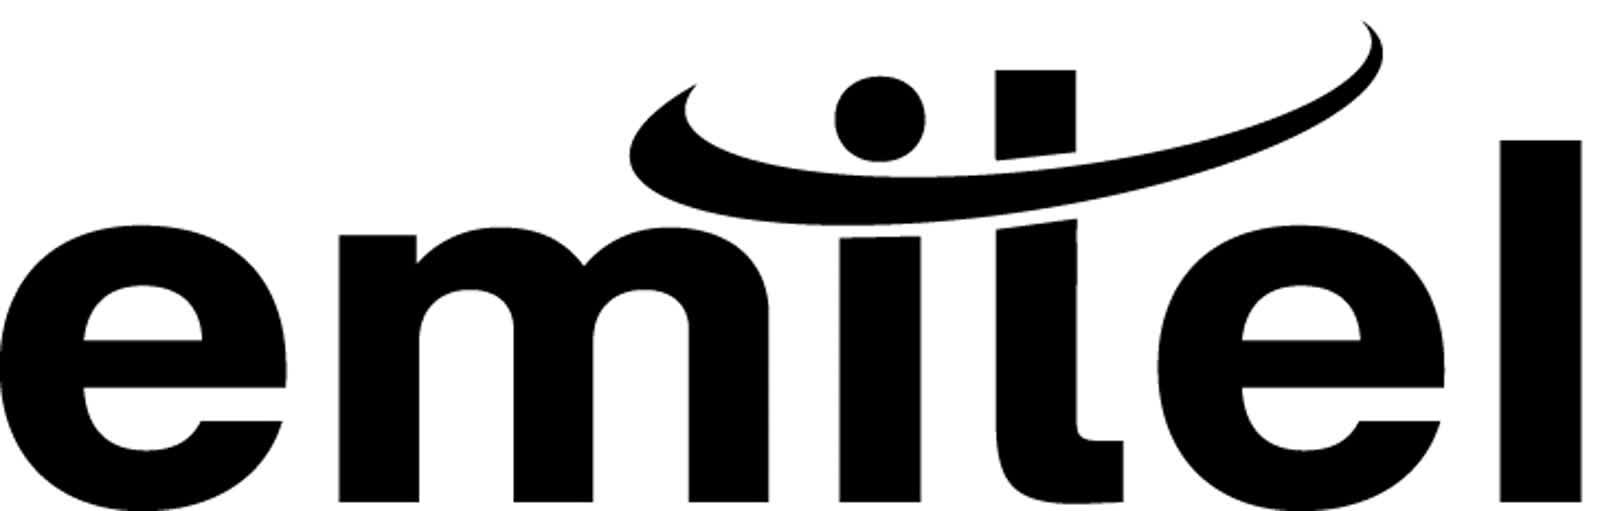 Logo-Emitel-BLACK.jpg